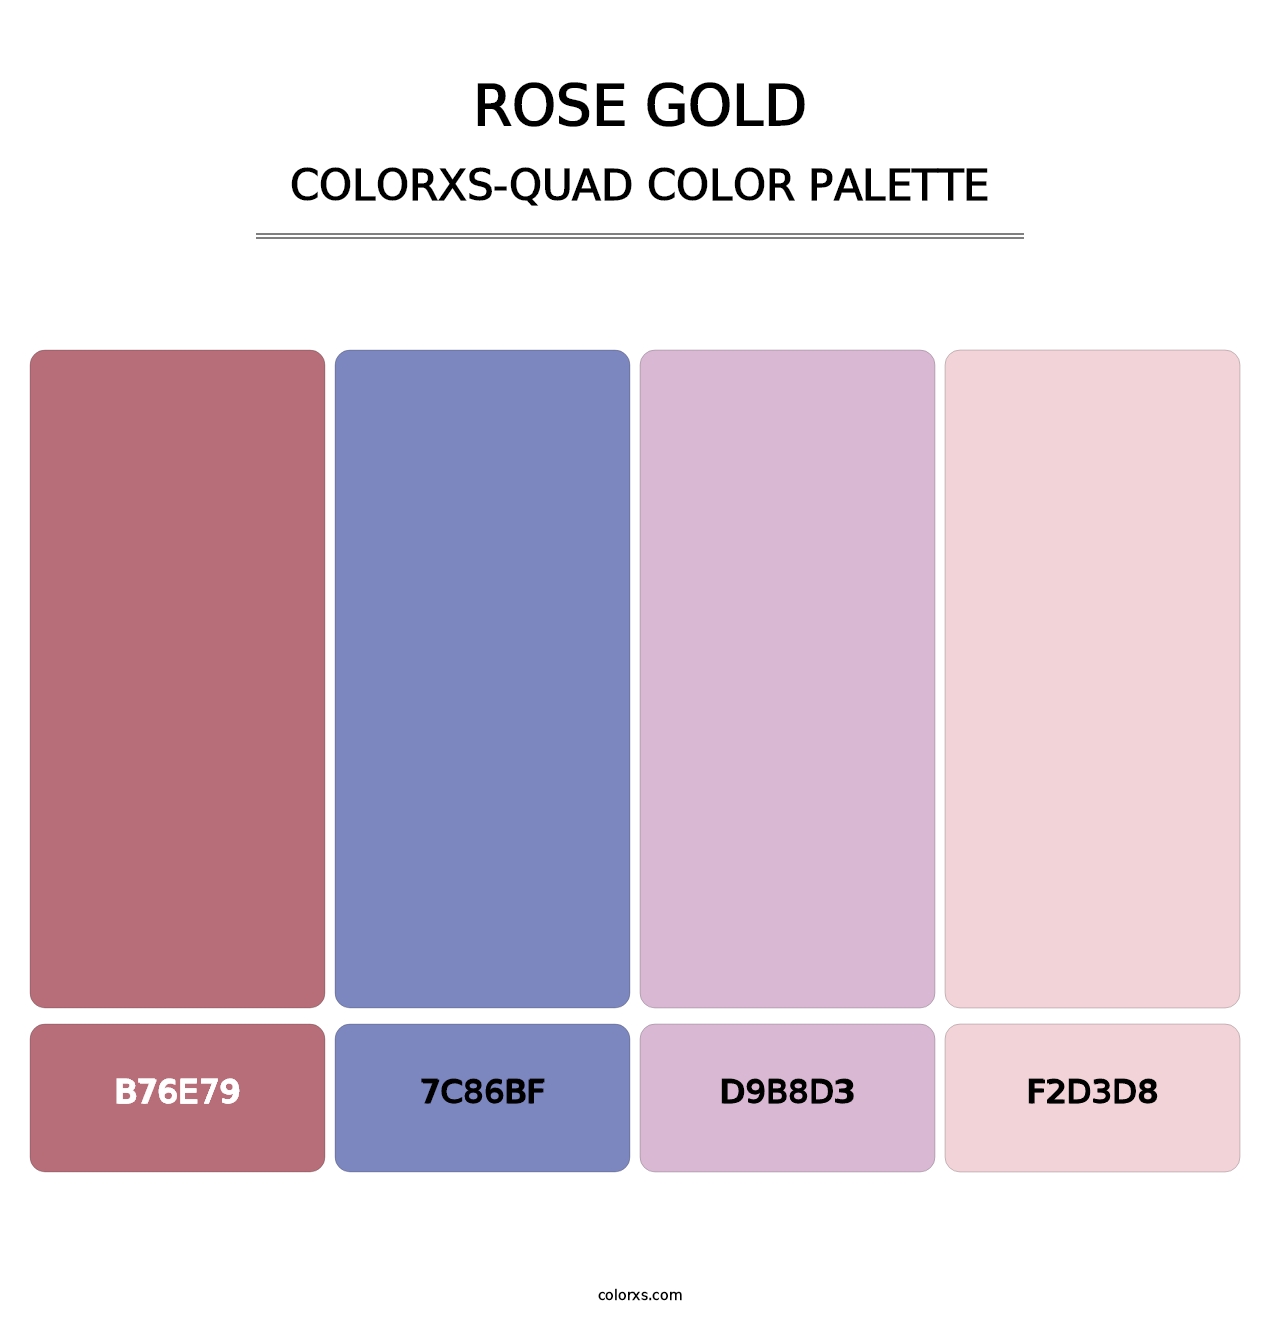 Rose Gold - Colorxs Quad Palette